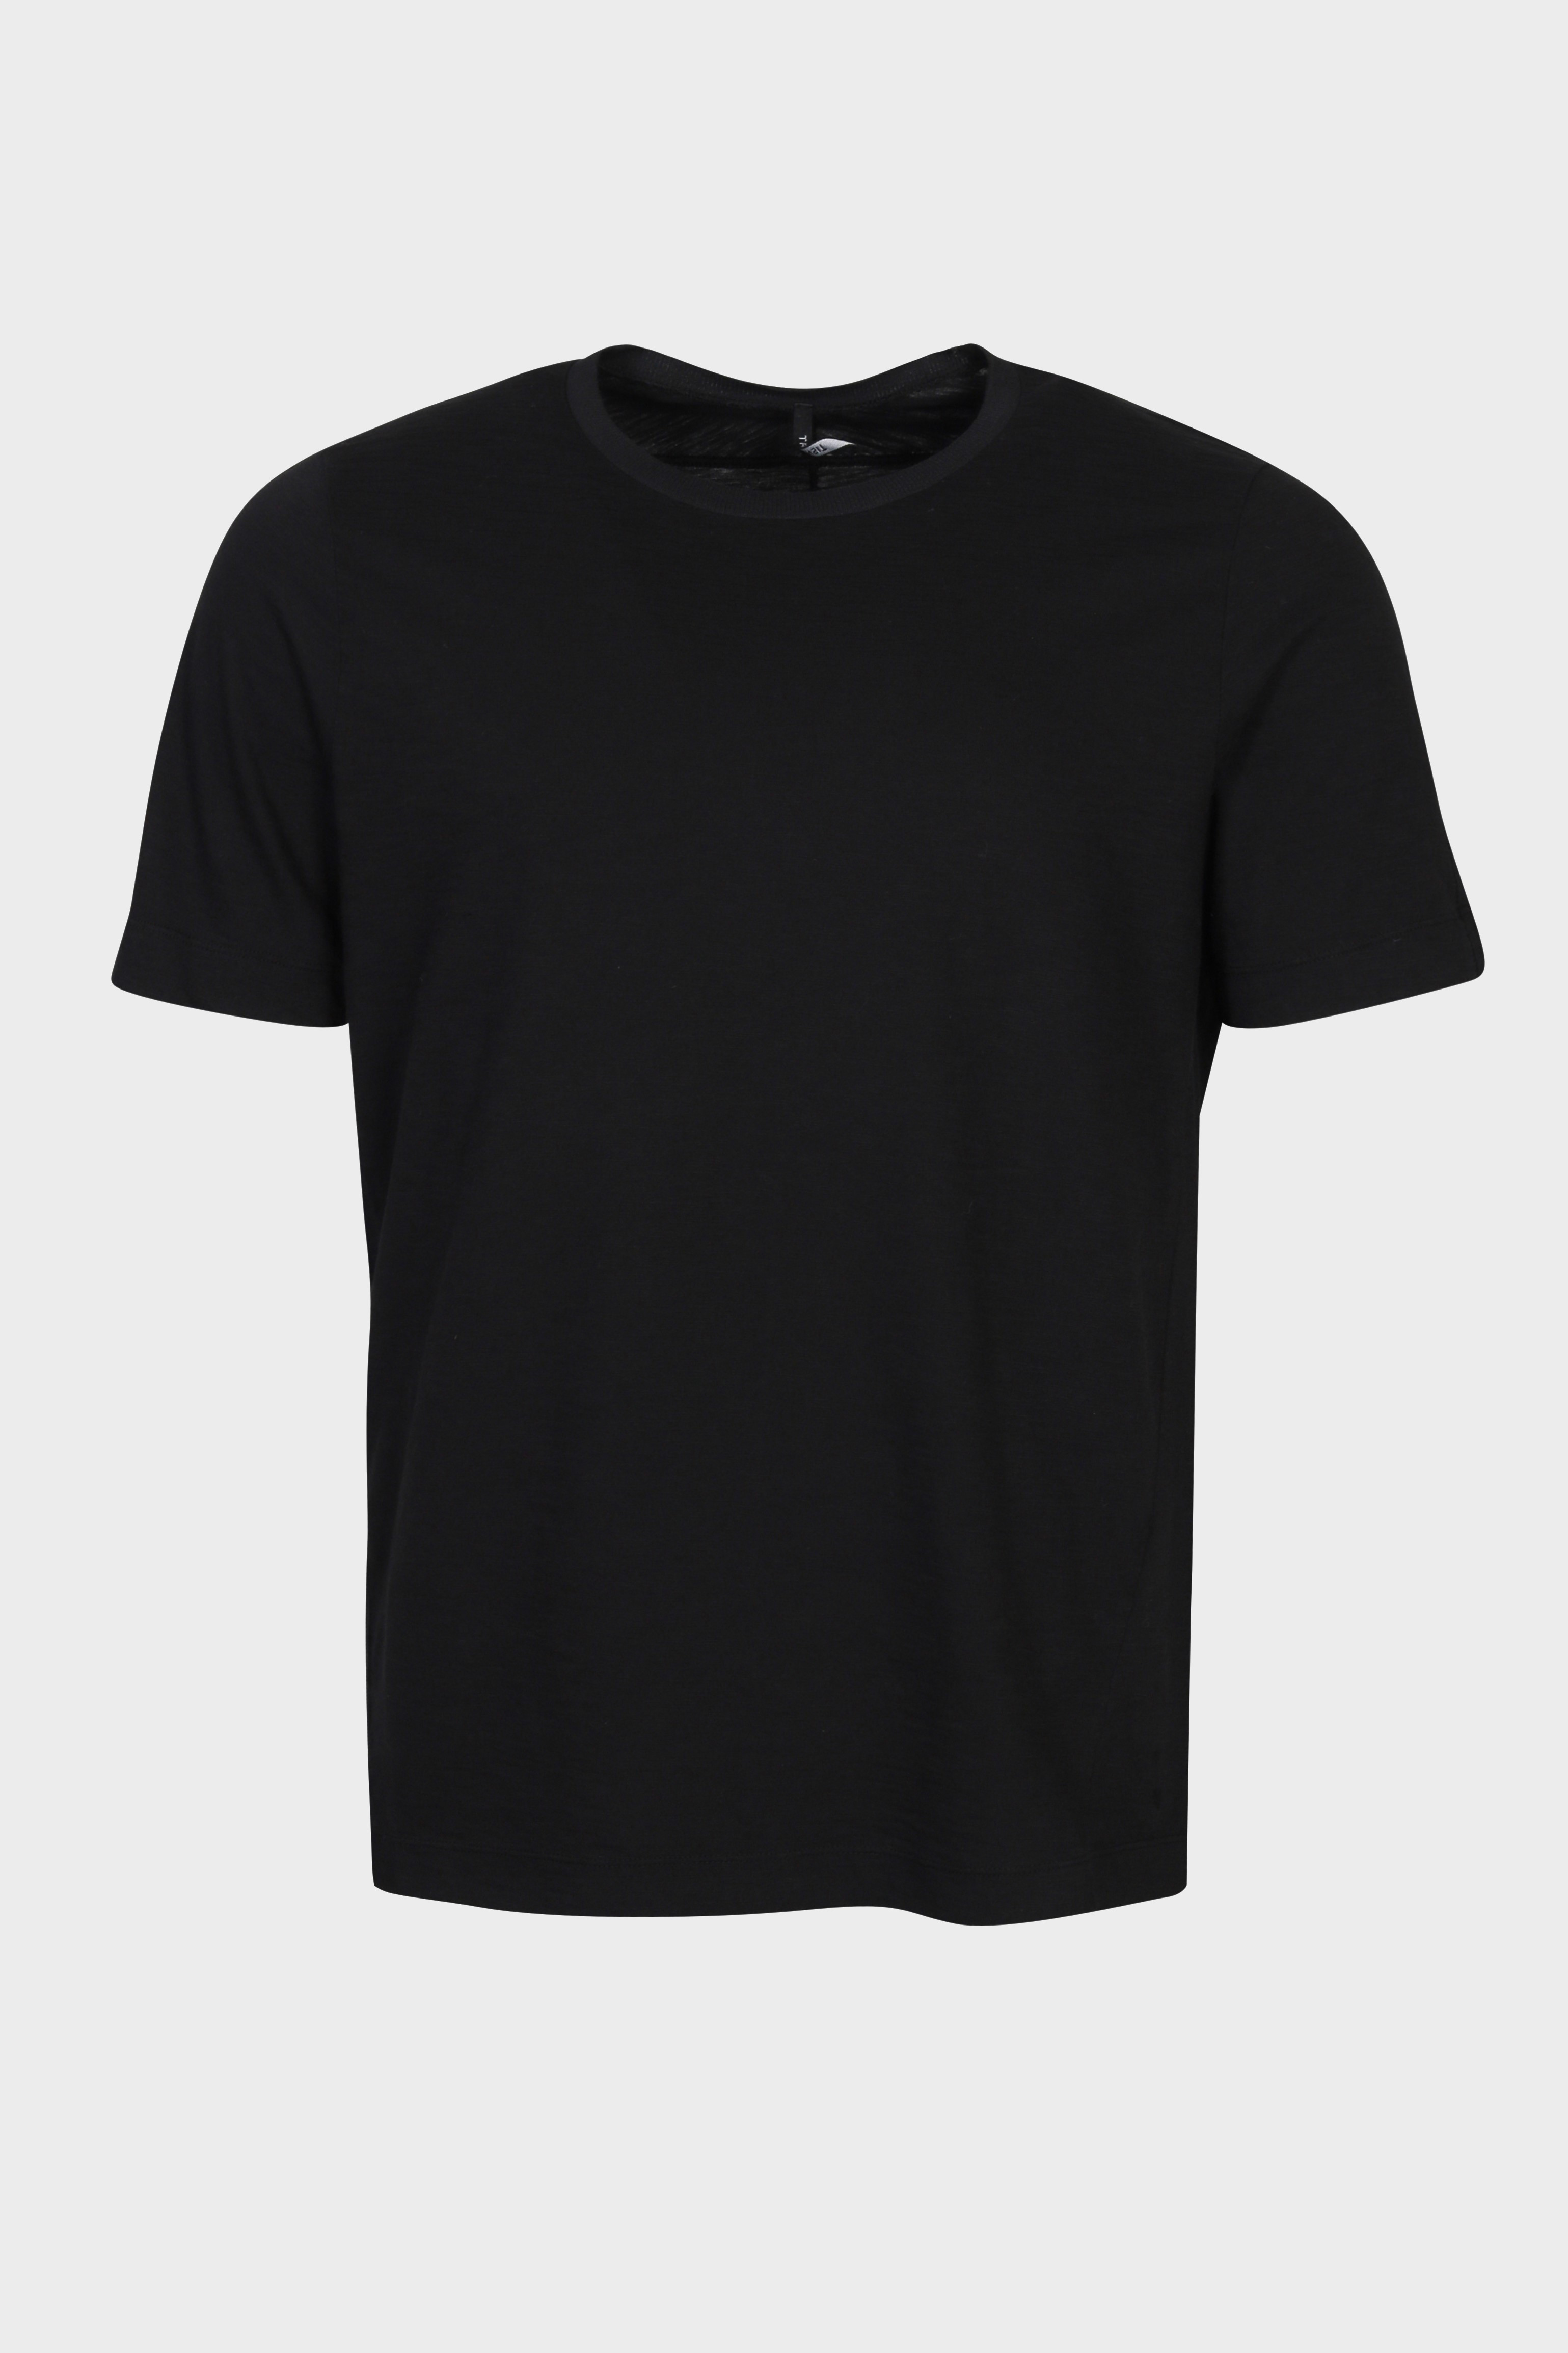 TRANSIT UOMO Slub Jersey T-Shirt in Black